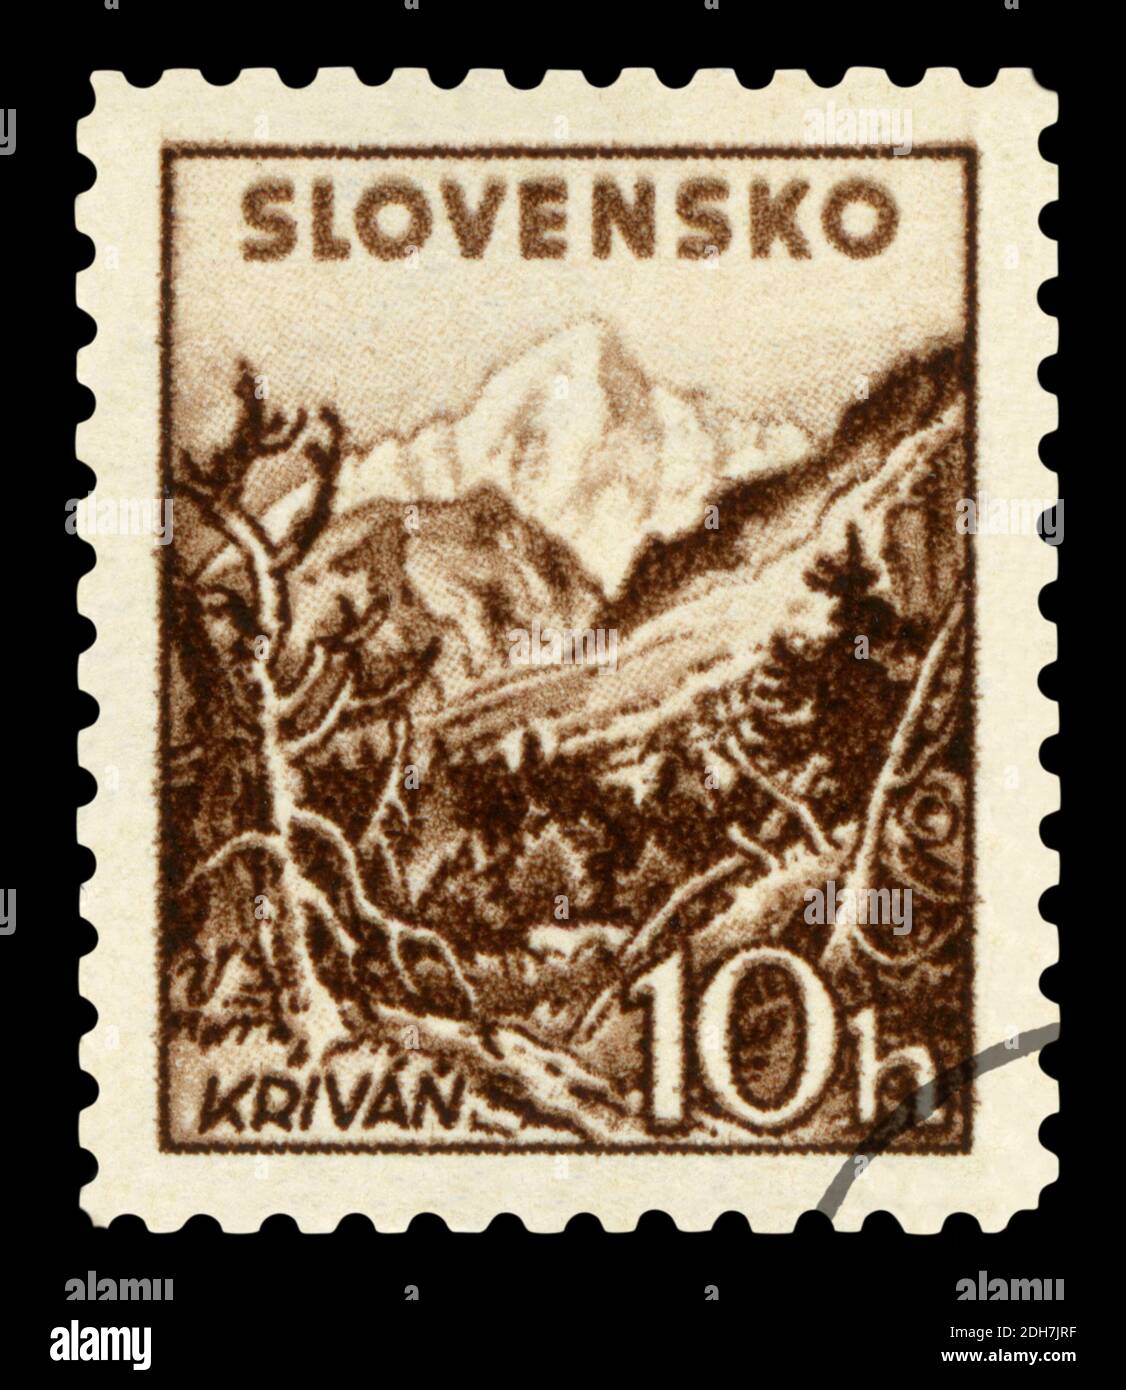 SLOVAQUIE - VERS 1943: Timbre imprimé en Slovaquie montrant Krivan situé dans les montagnes de High tatra, vers 1943 Banque D'Images